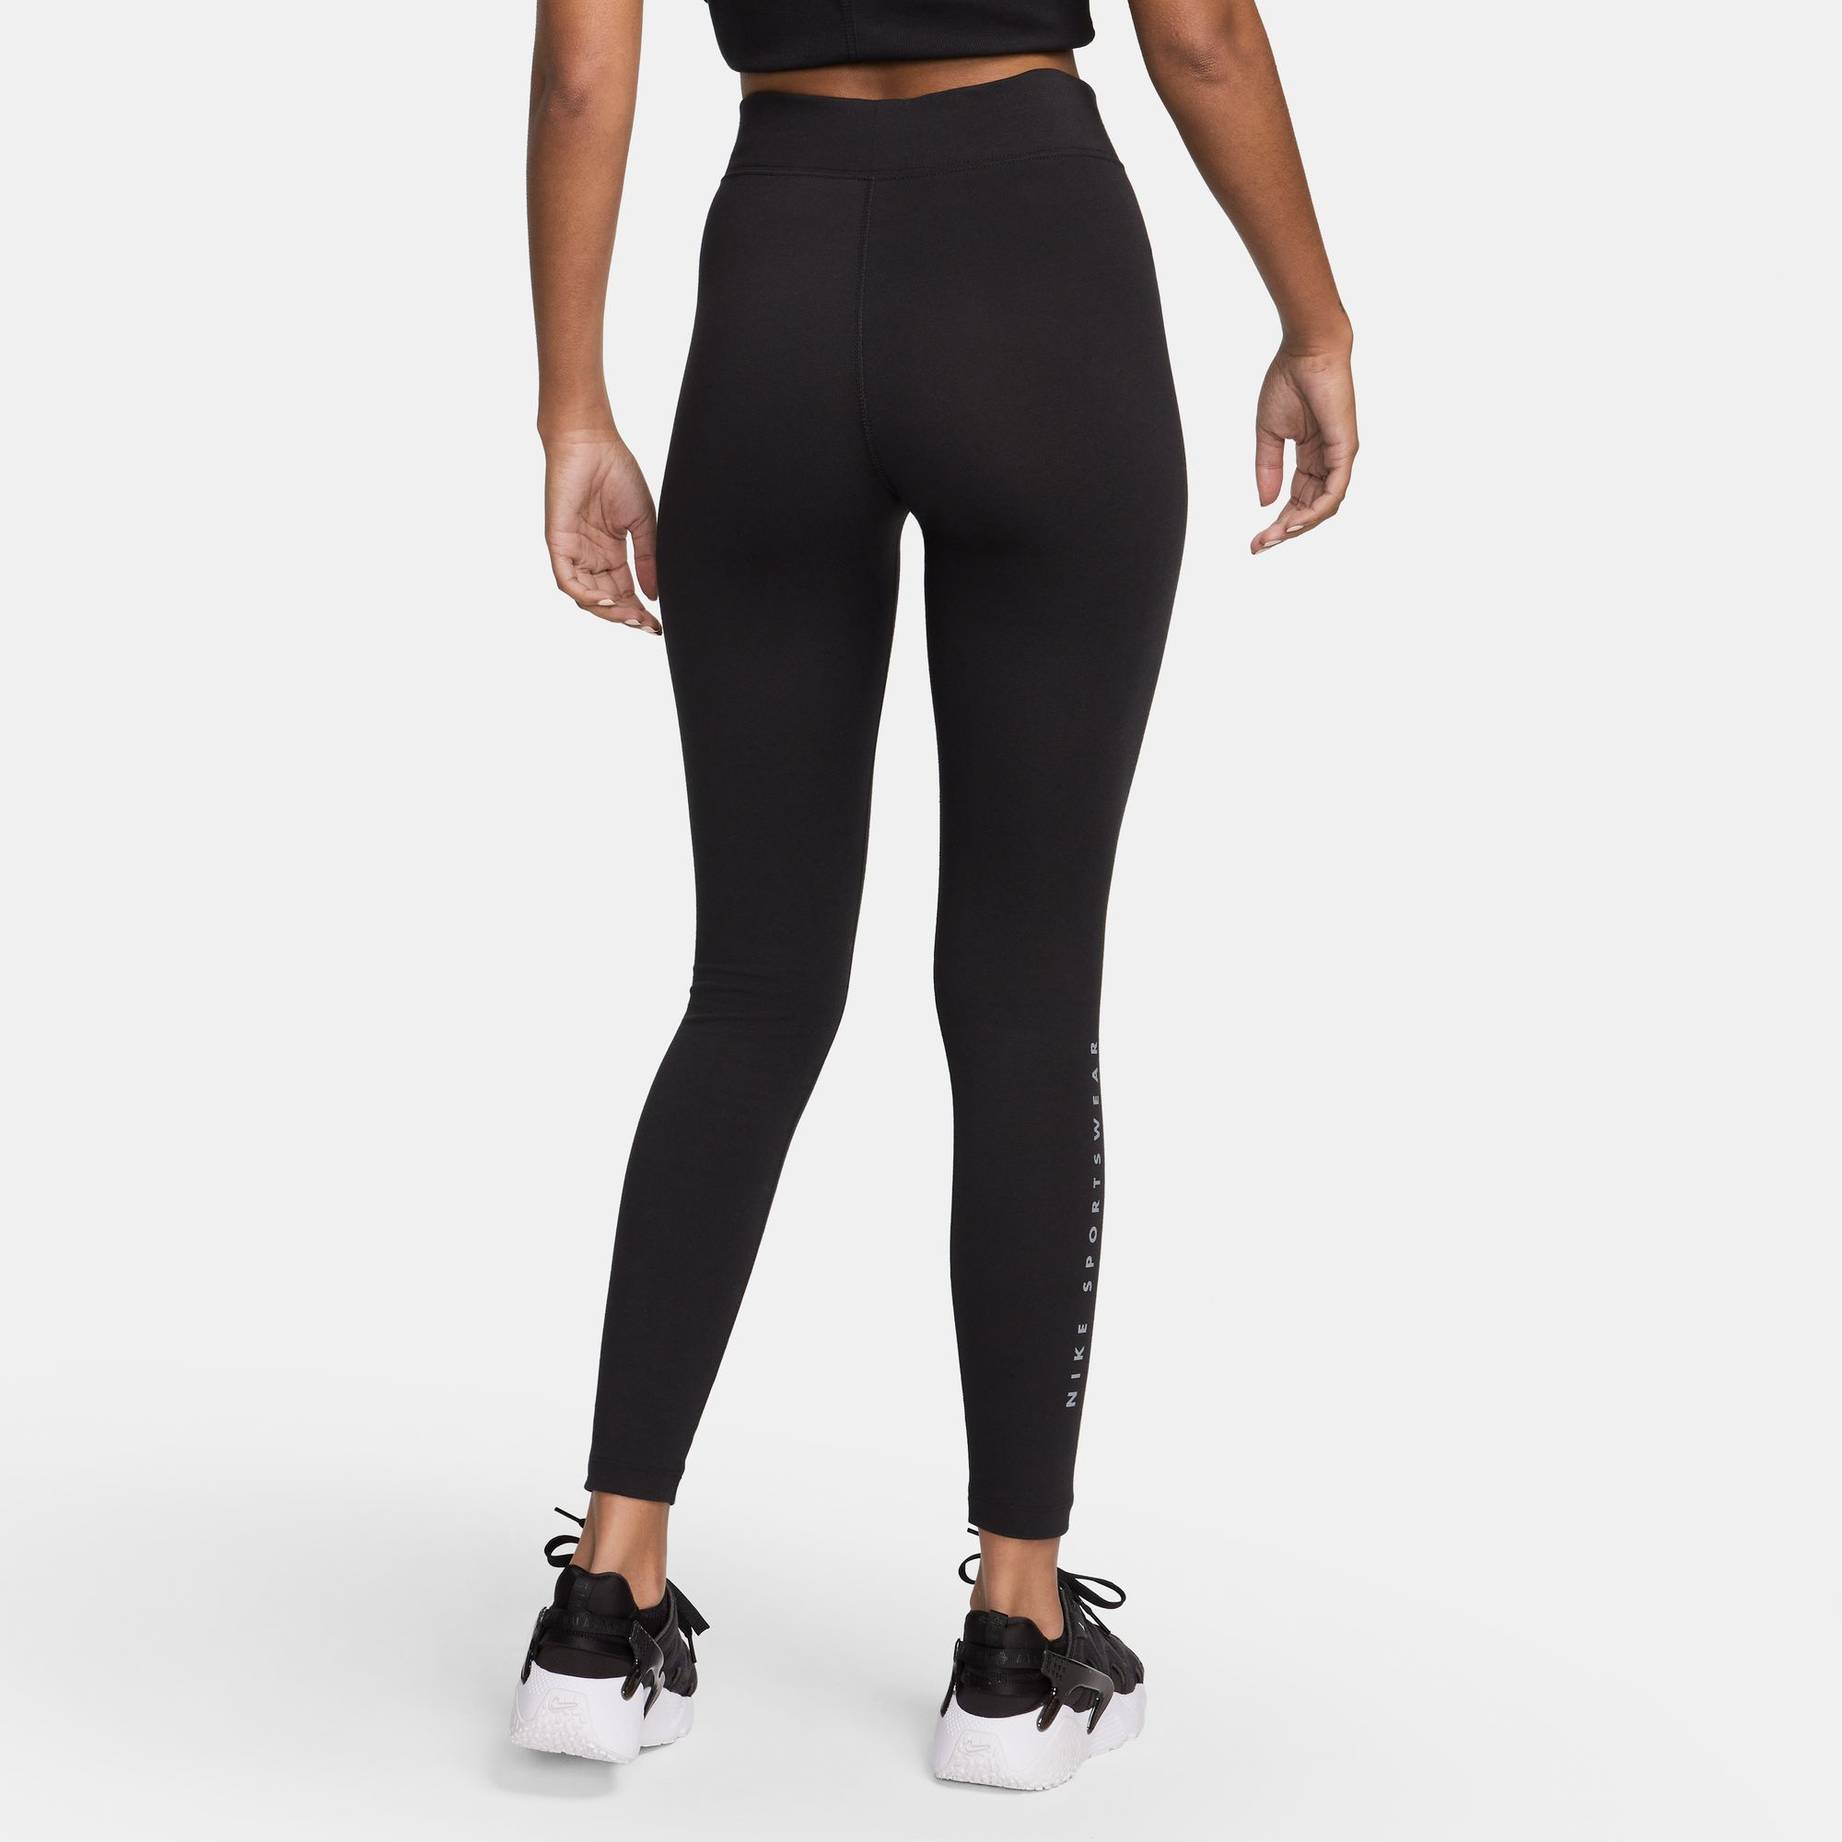 Nike Sportswear Damen Leggings in dunkelgrau bestellen - 17931802